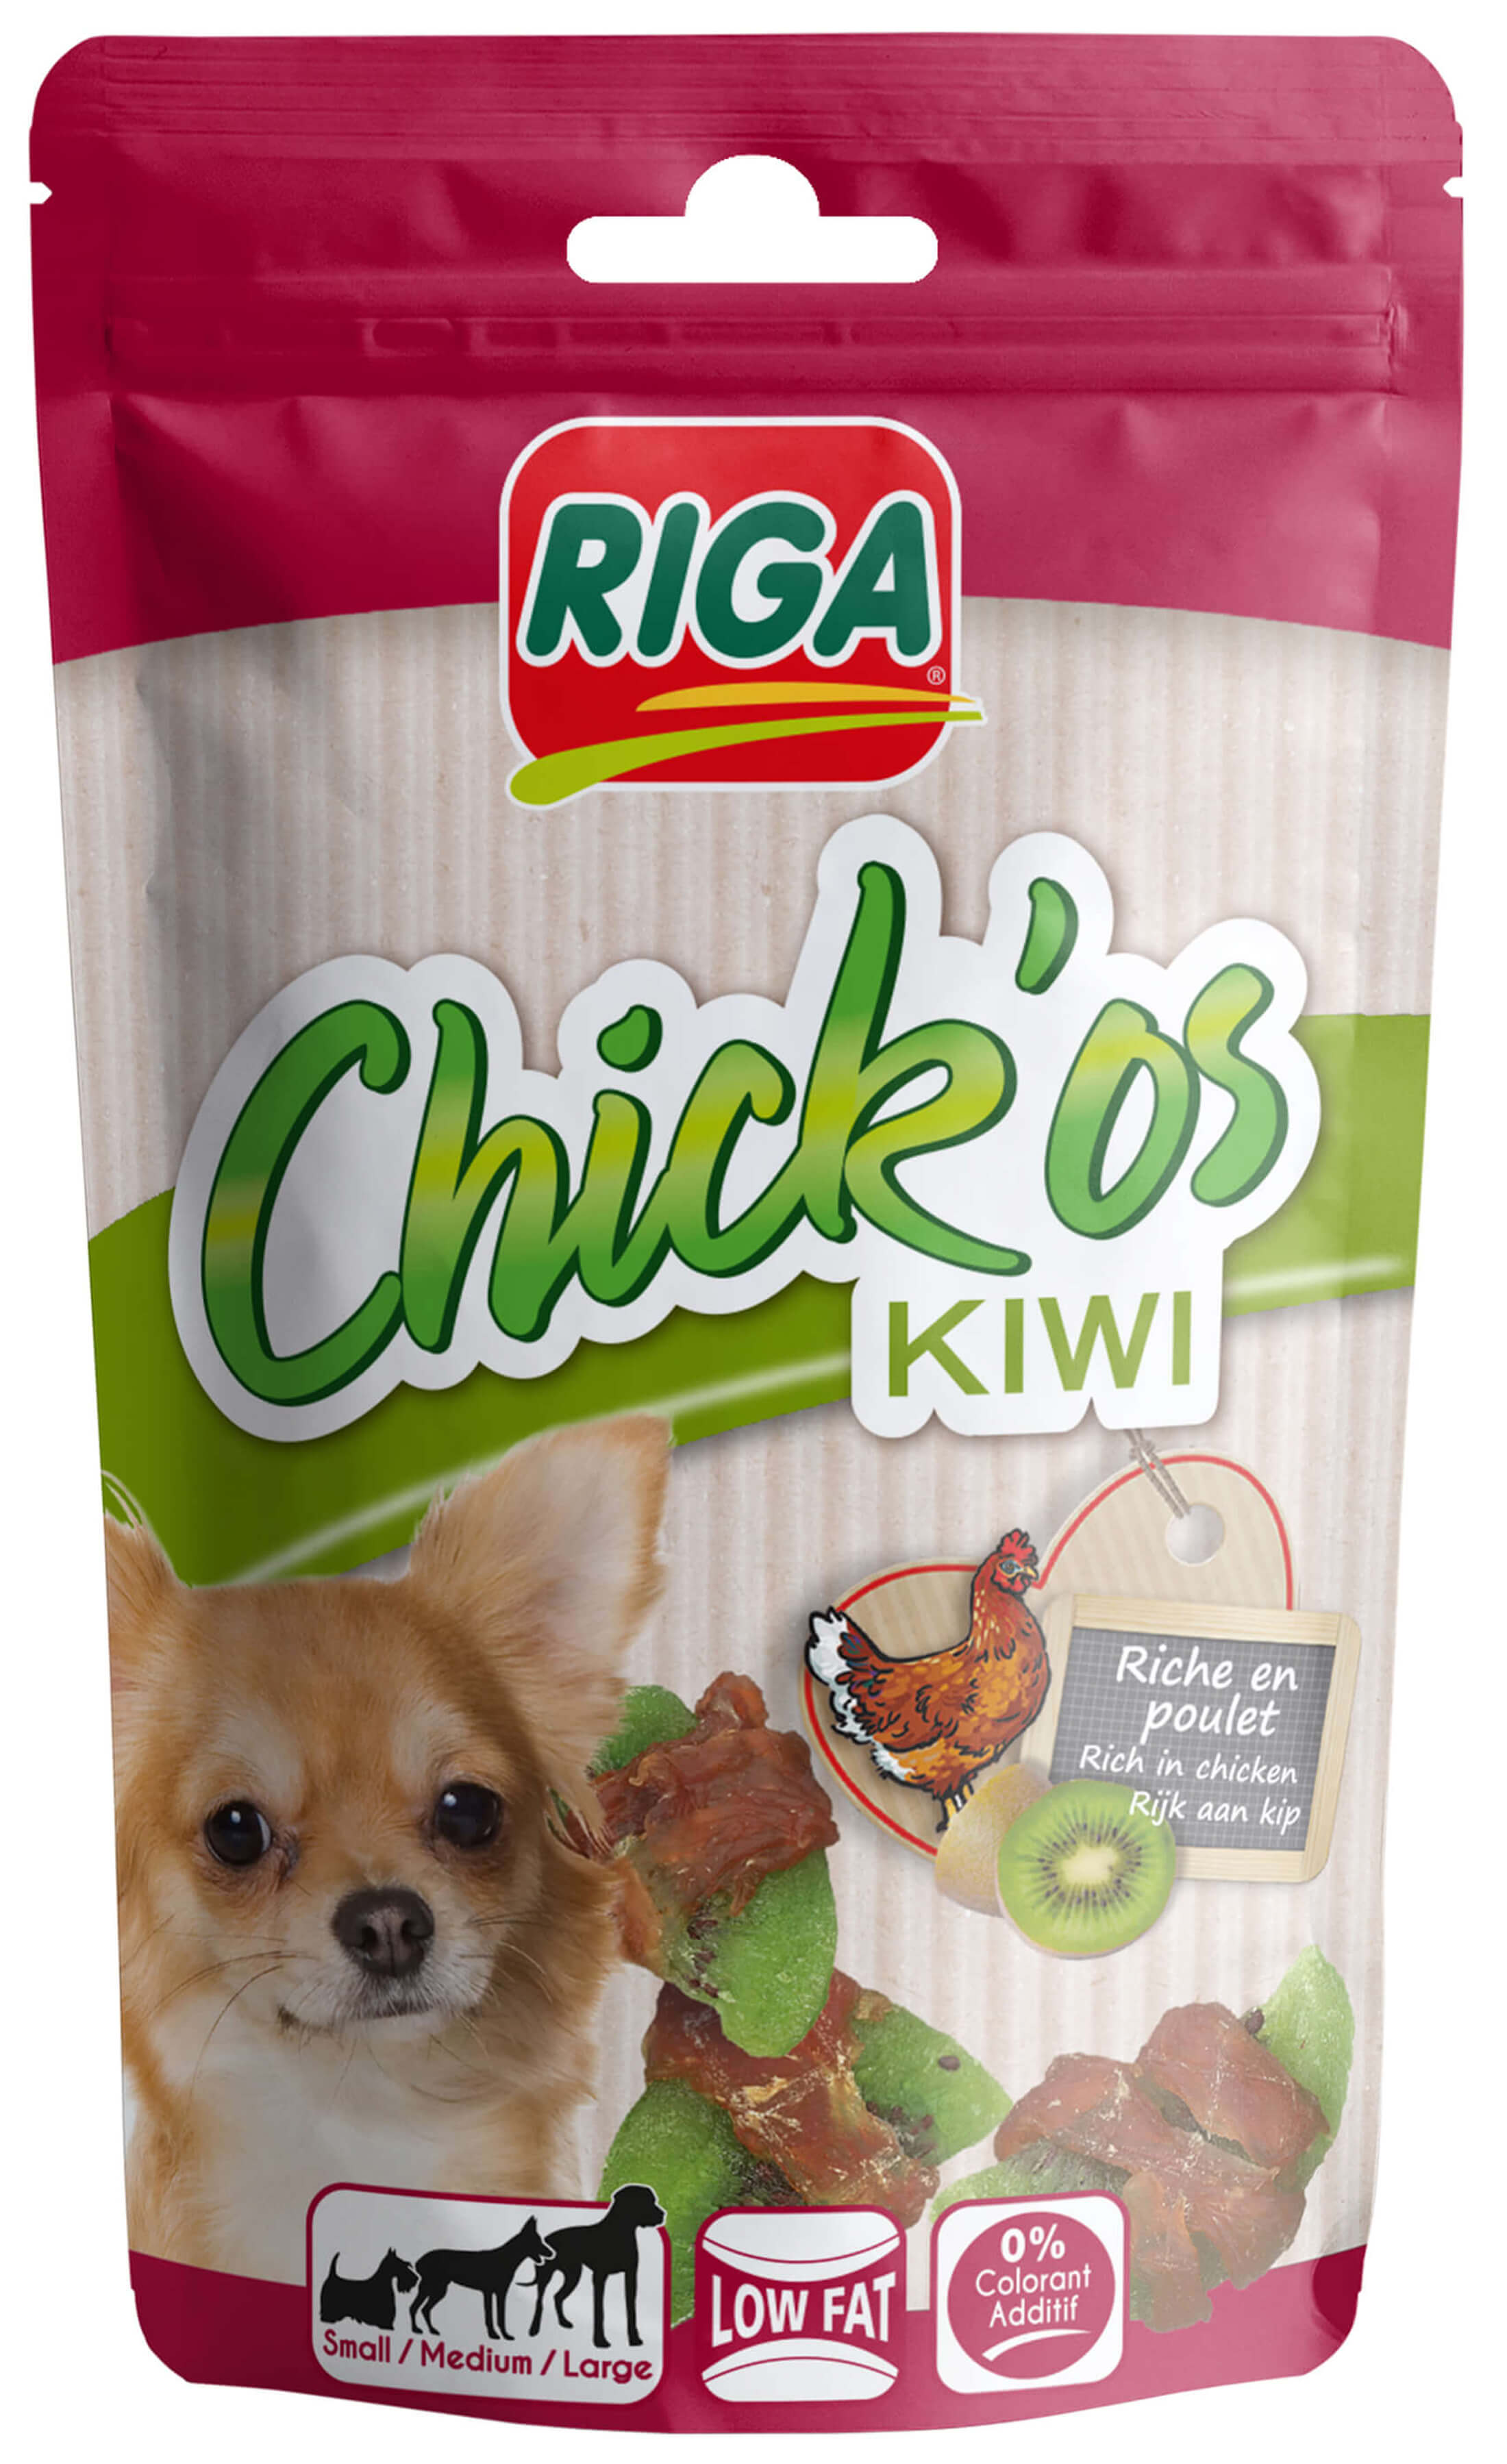 Friandises chien Chick’os Kiwi de Riga